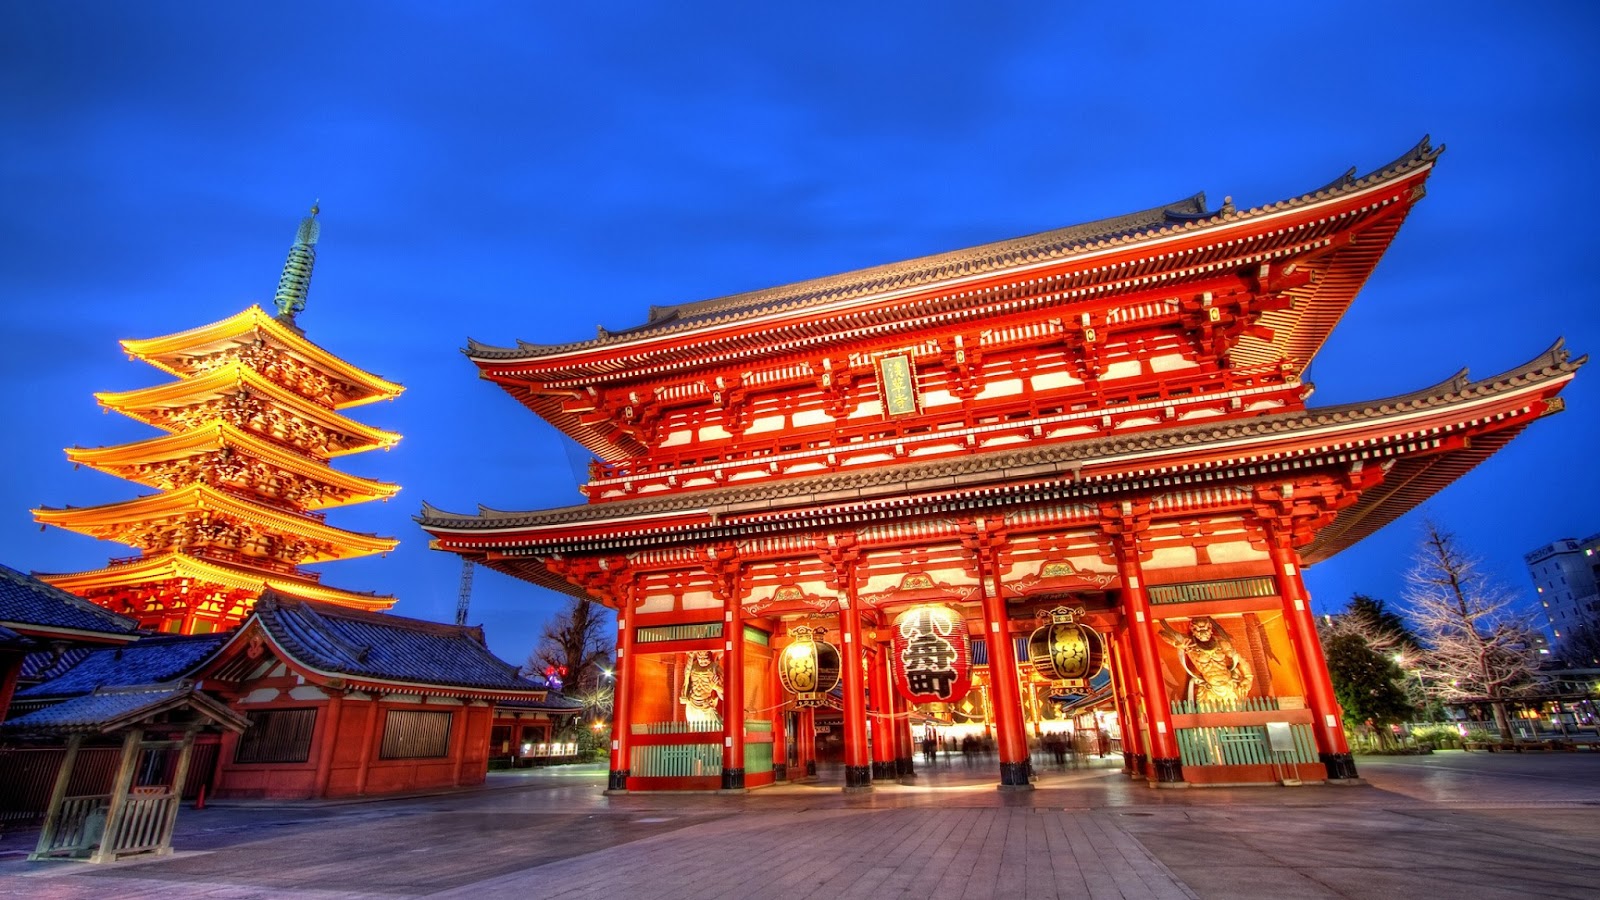 Du lịch Nhật Bản mùa hè - Thái An Travel - đền cổ